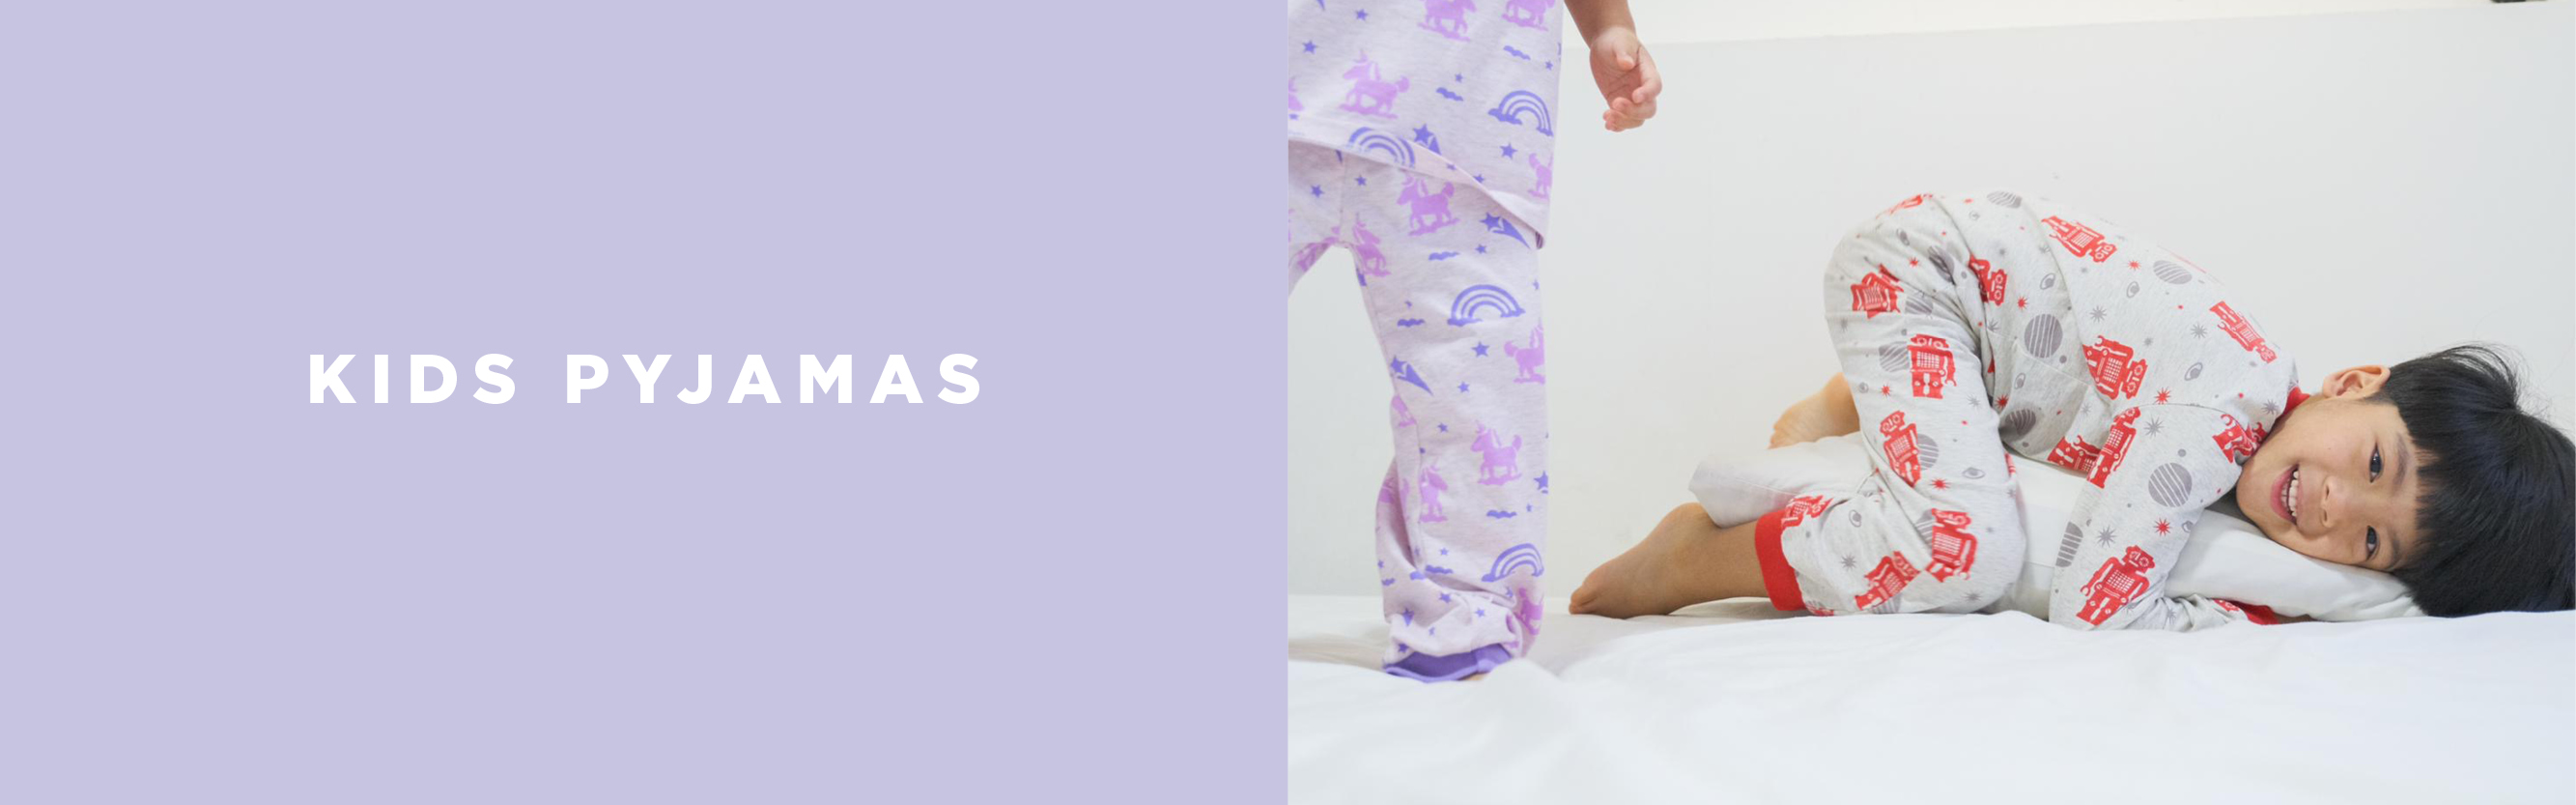 kids-pyjamas